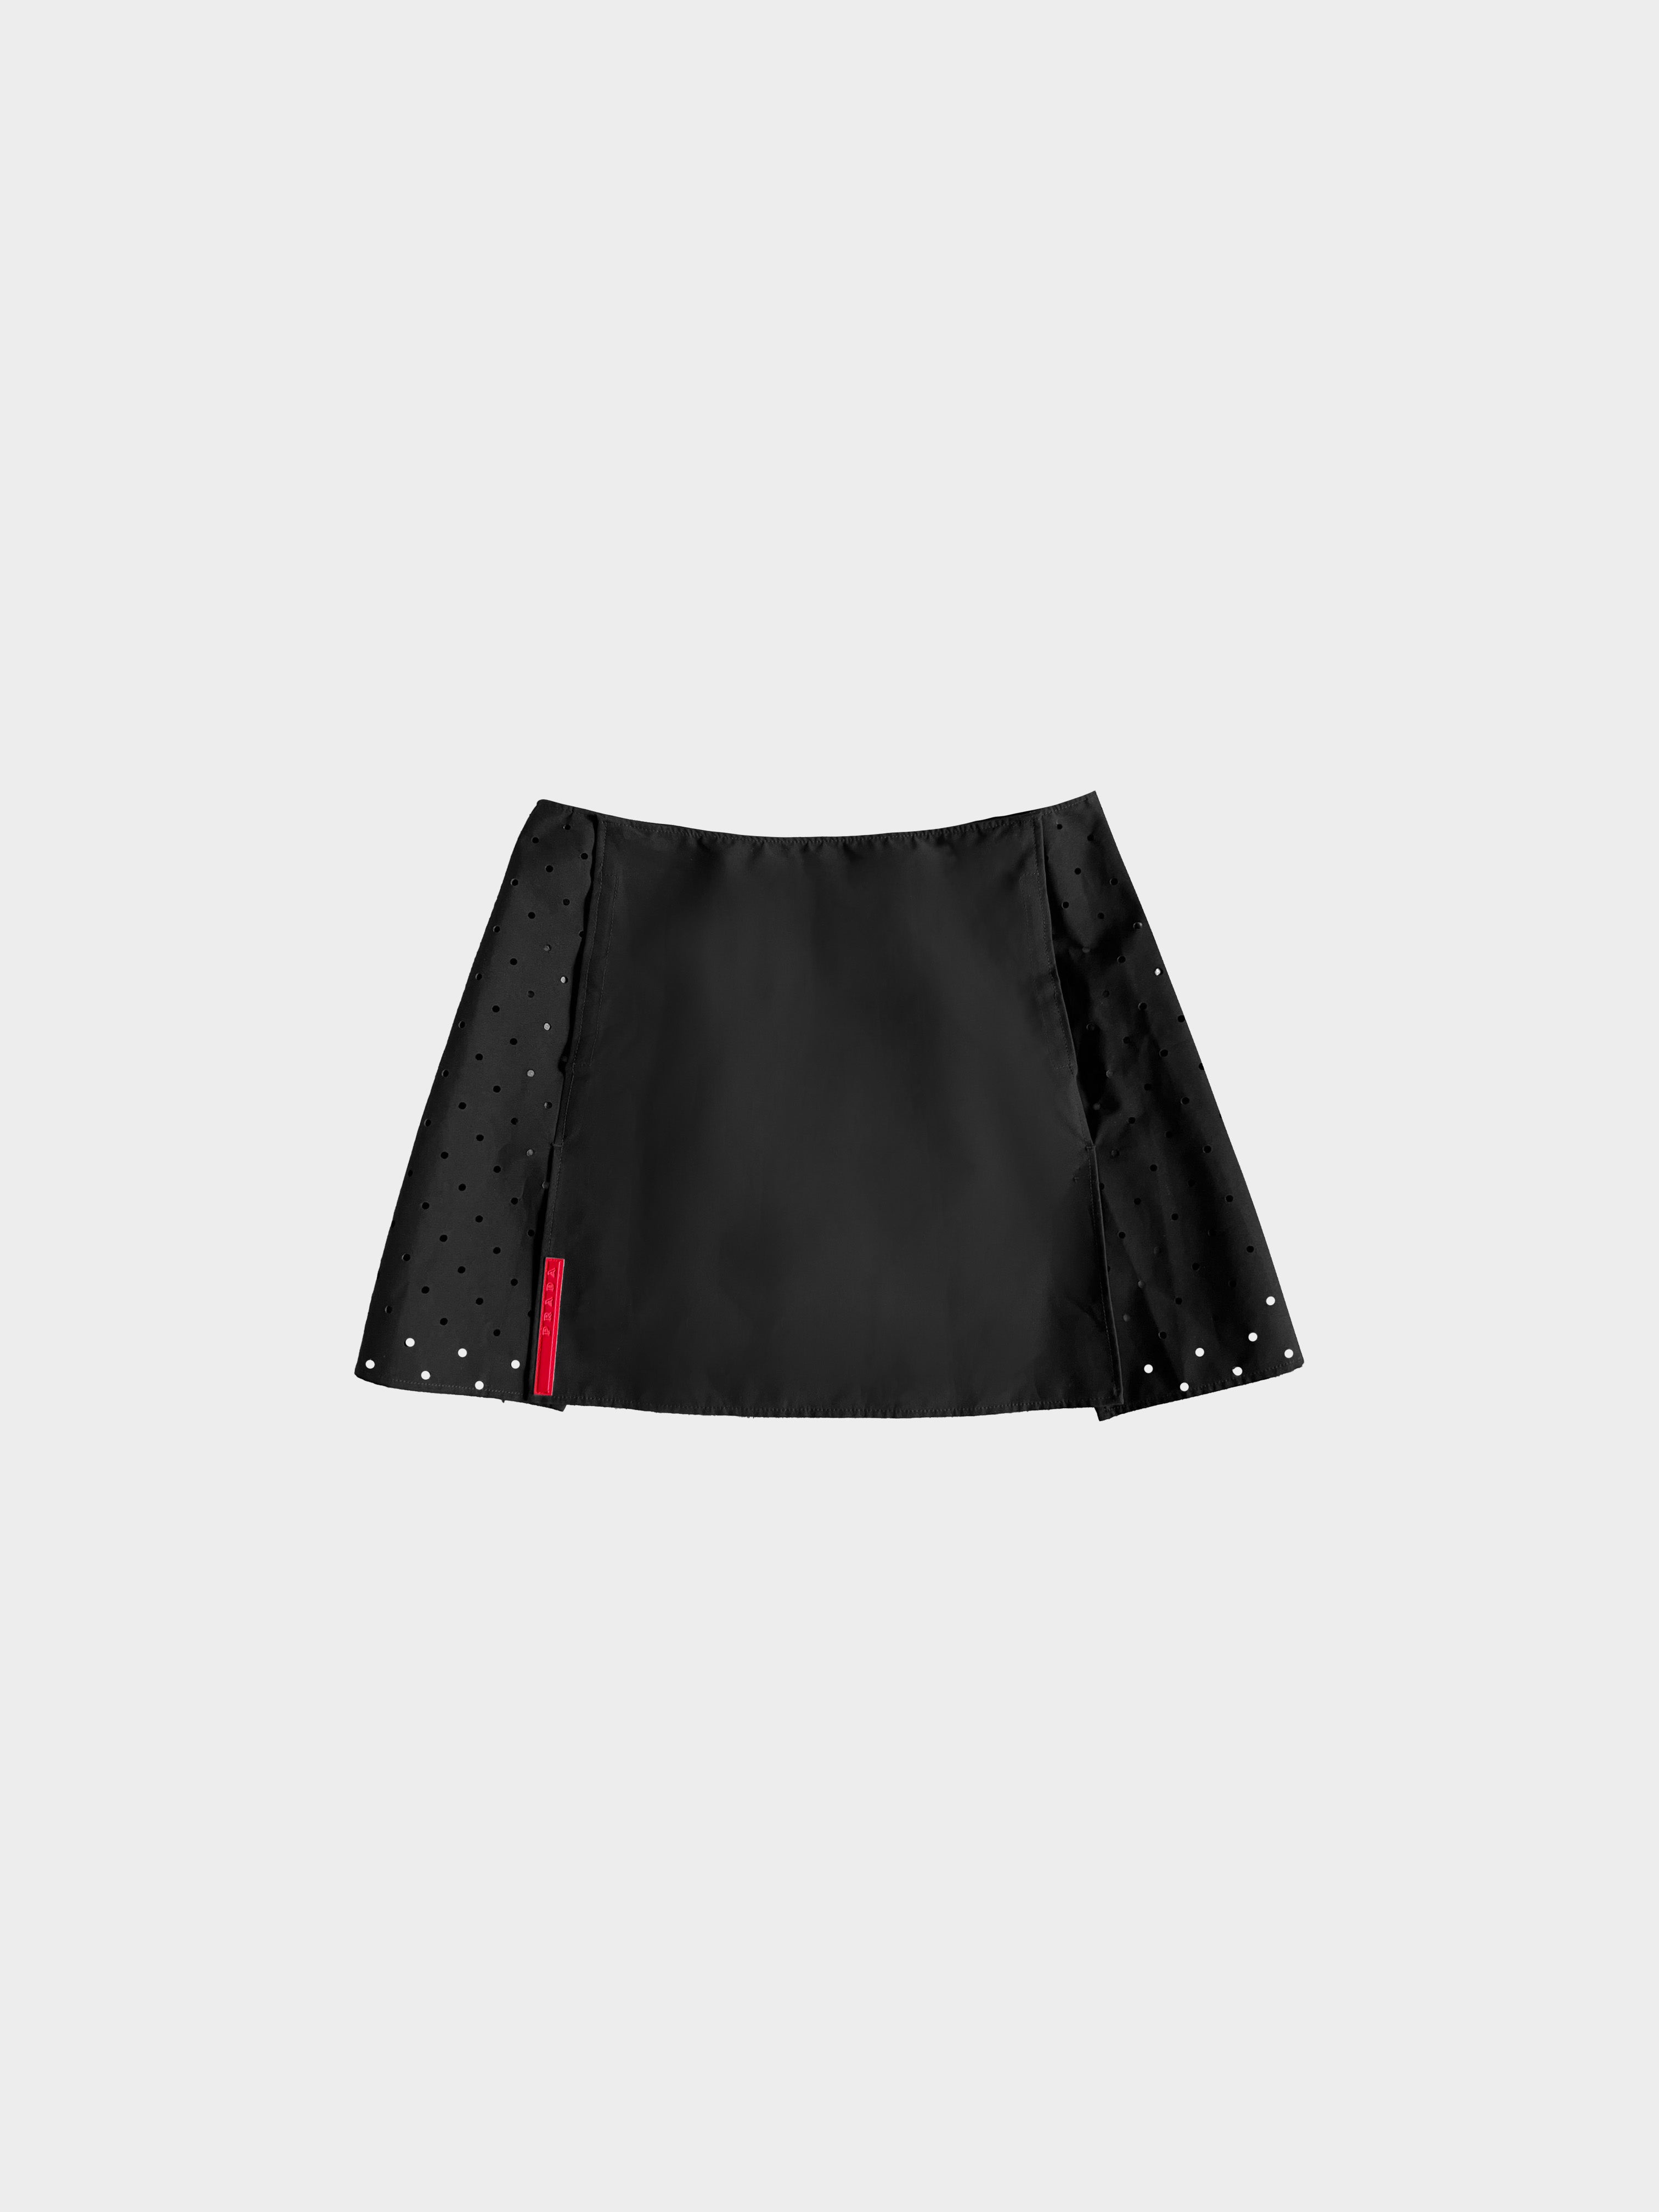 Prada SS 1999 Nylon Perforated Miniskirt